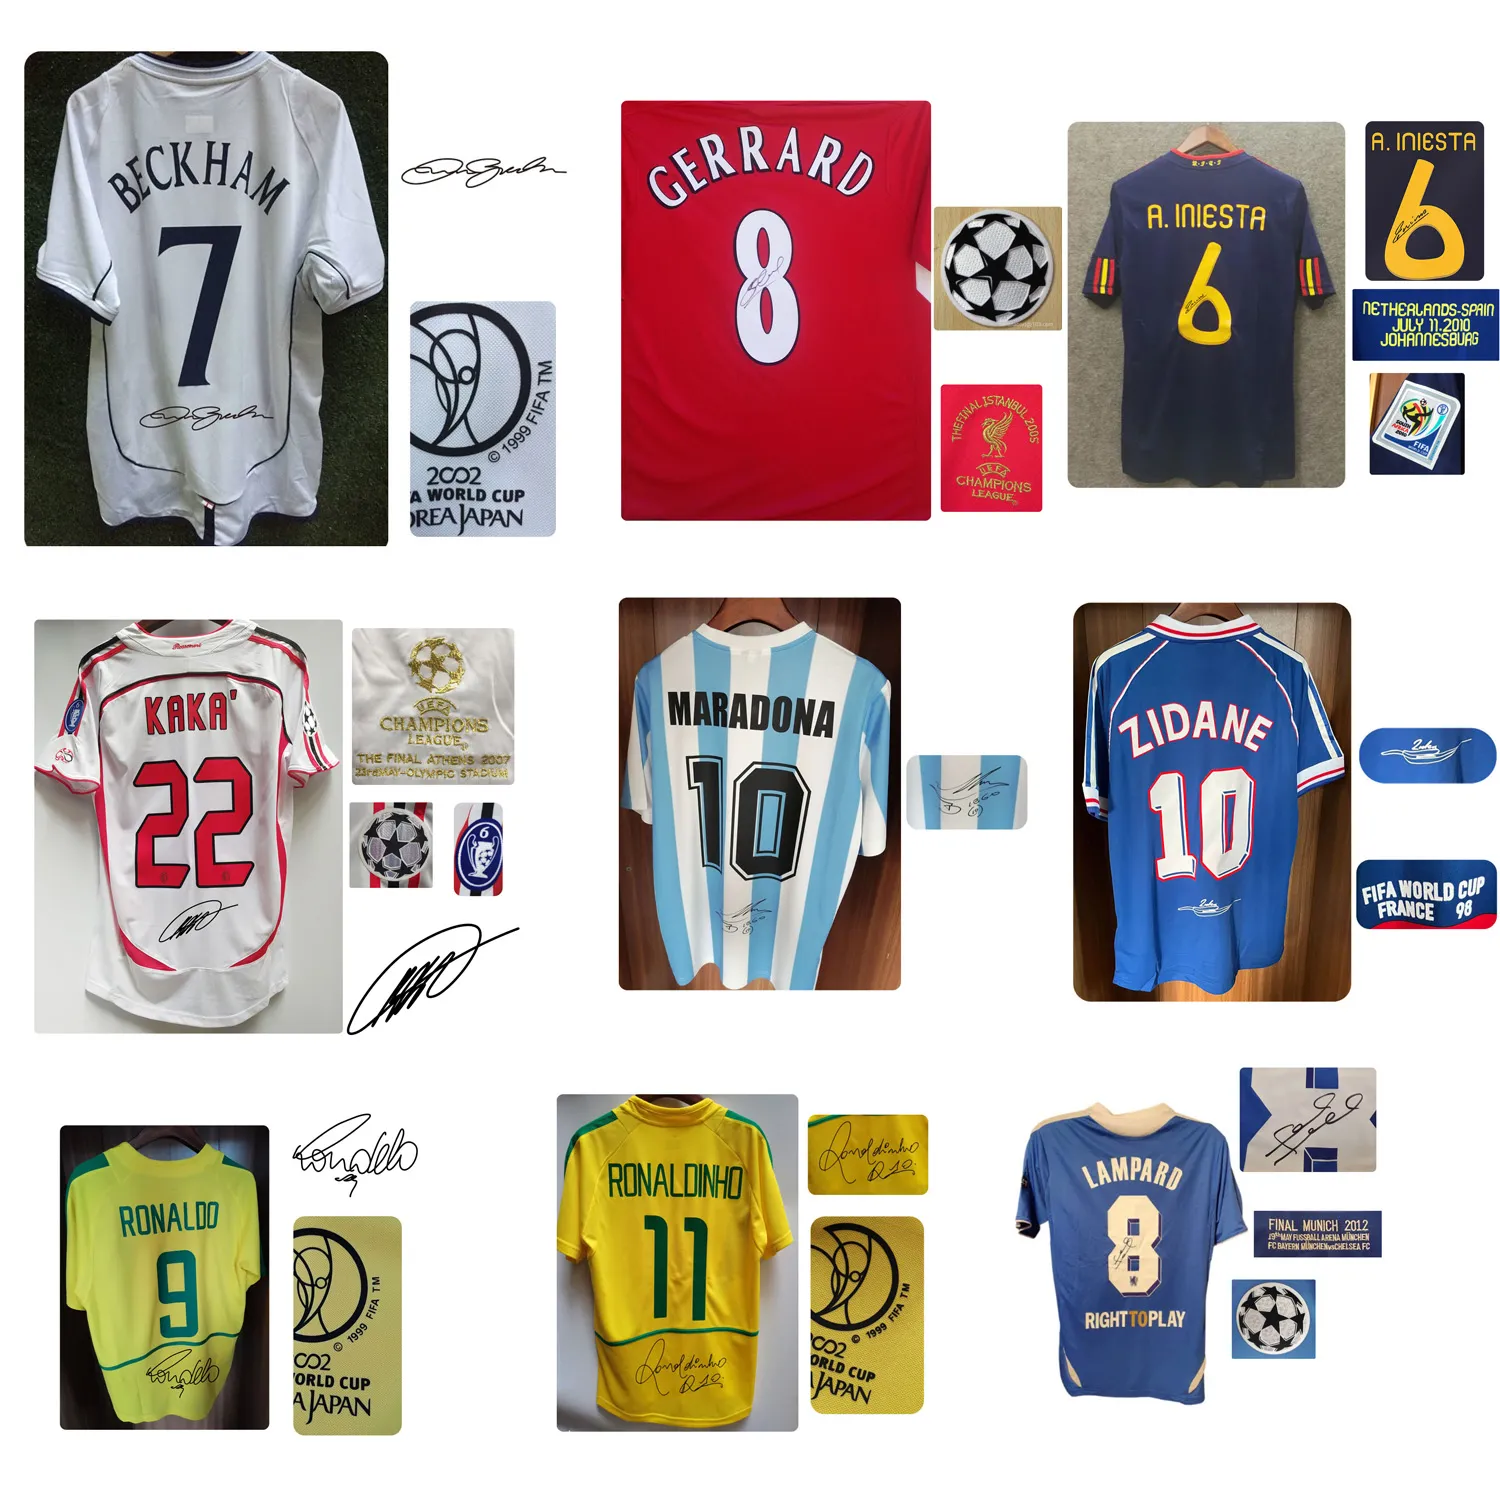 Amerikan Koleji Futbol Giyim Tüm Süper Yıldız İmzalı Jersey Maradona Baggio Beckham İmza Gömlek Retro Kaka Gerrard Lampard Ronaldo Klasik Vintage Forsa